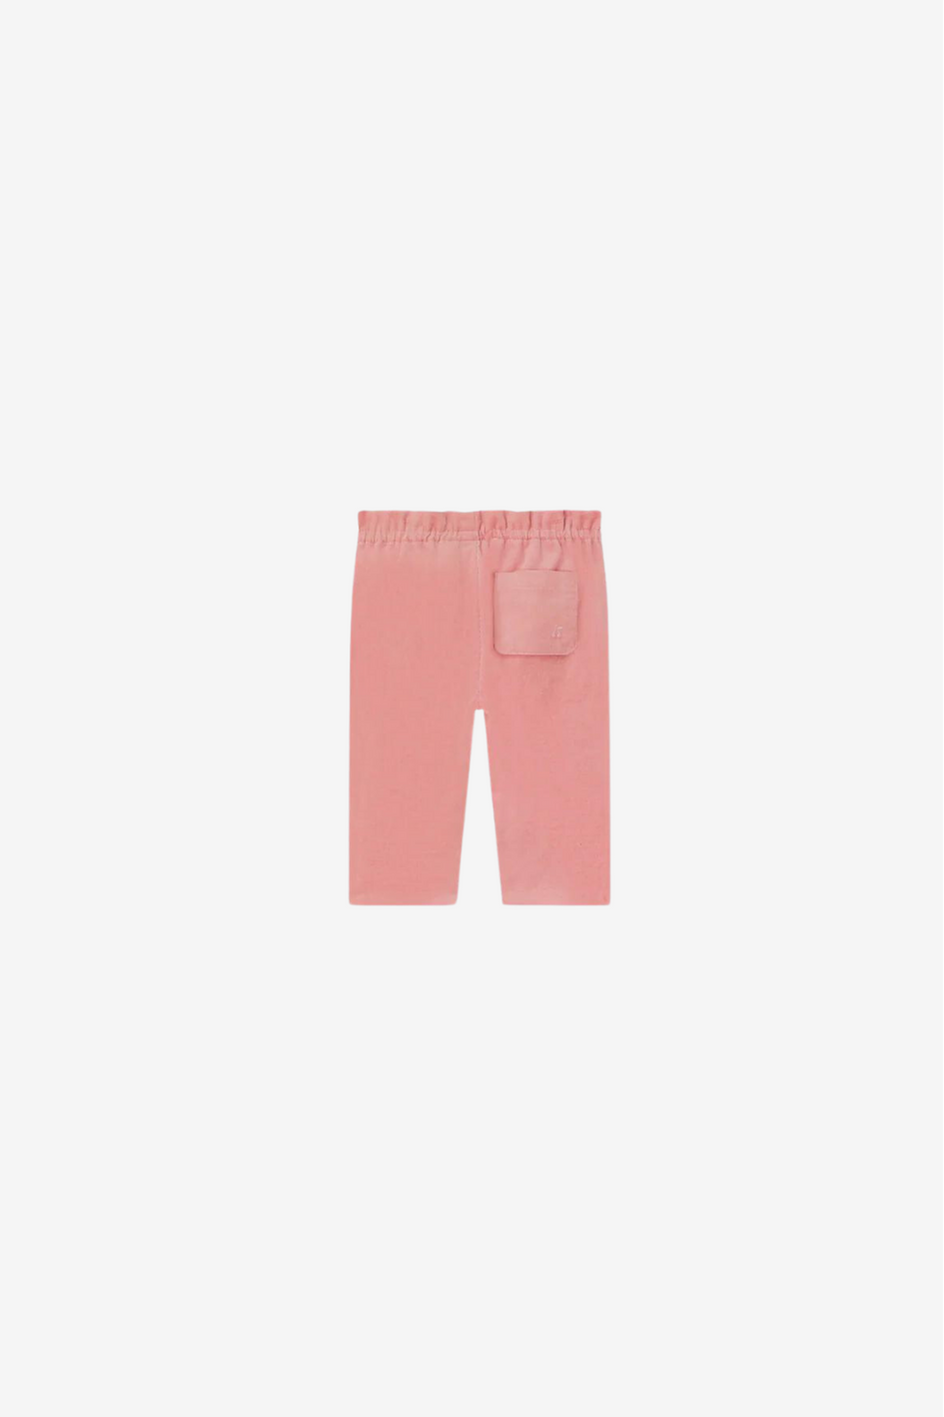 Pants Tweety faded pink